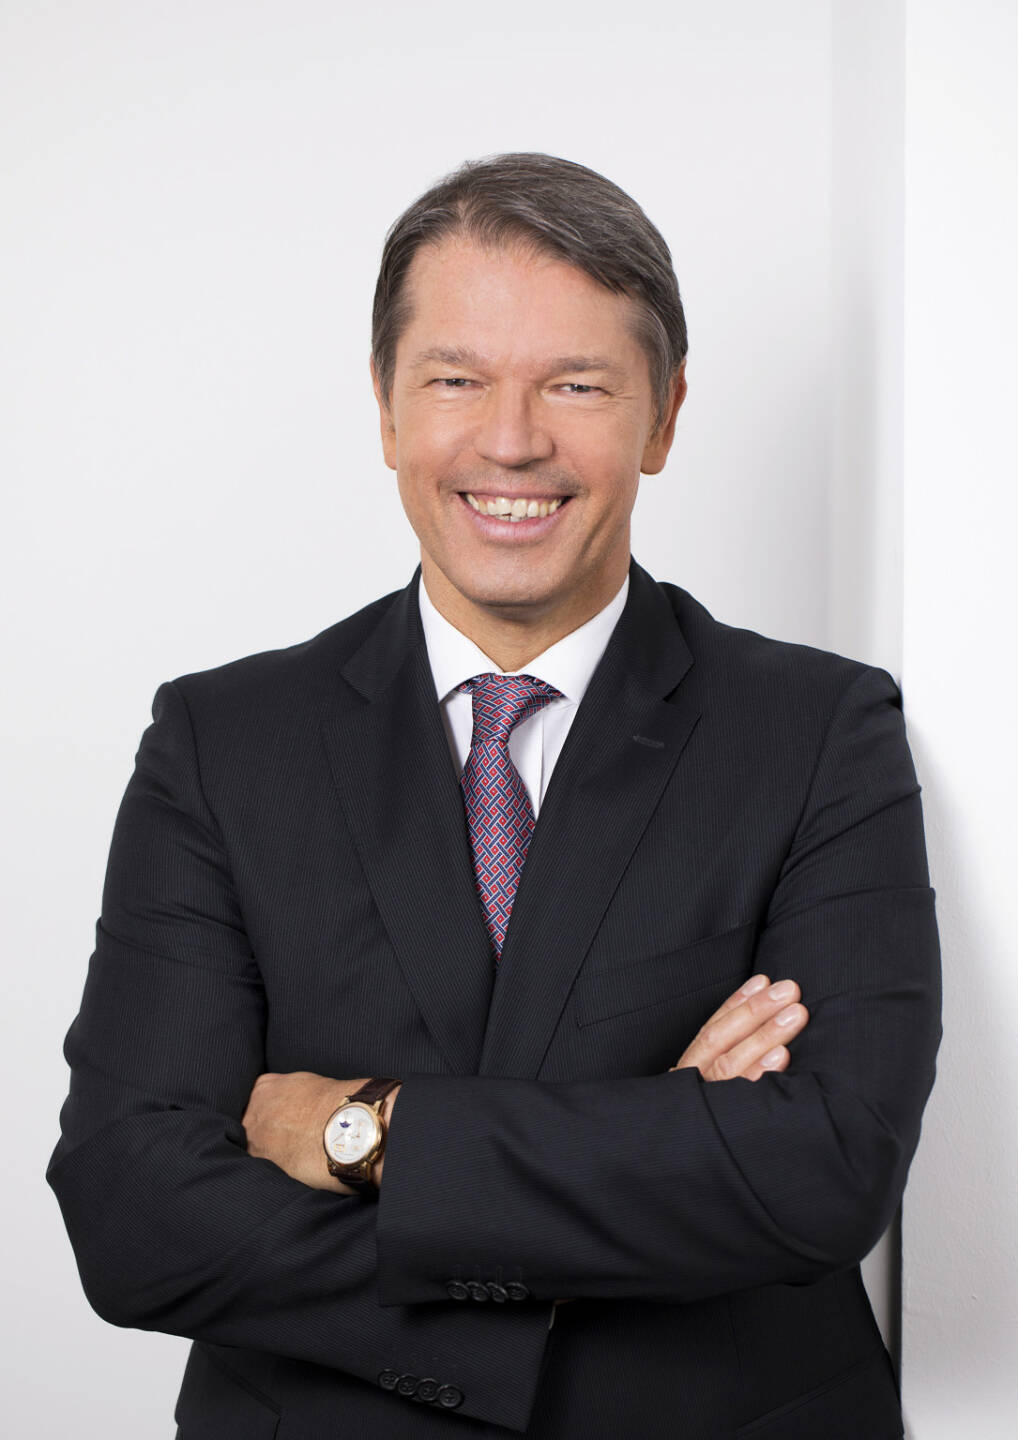 Gerhard Marterbauer, Partner bei Deloitte Österreich, Credit: Deloitte